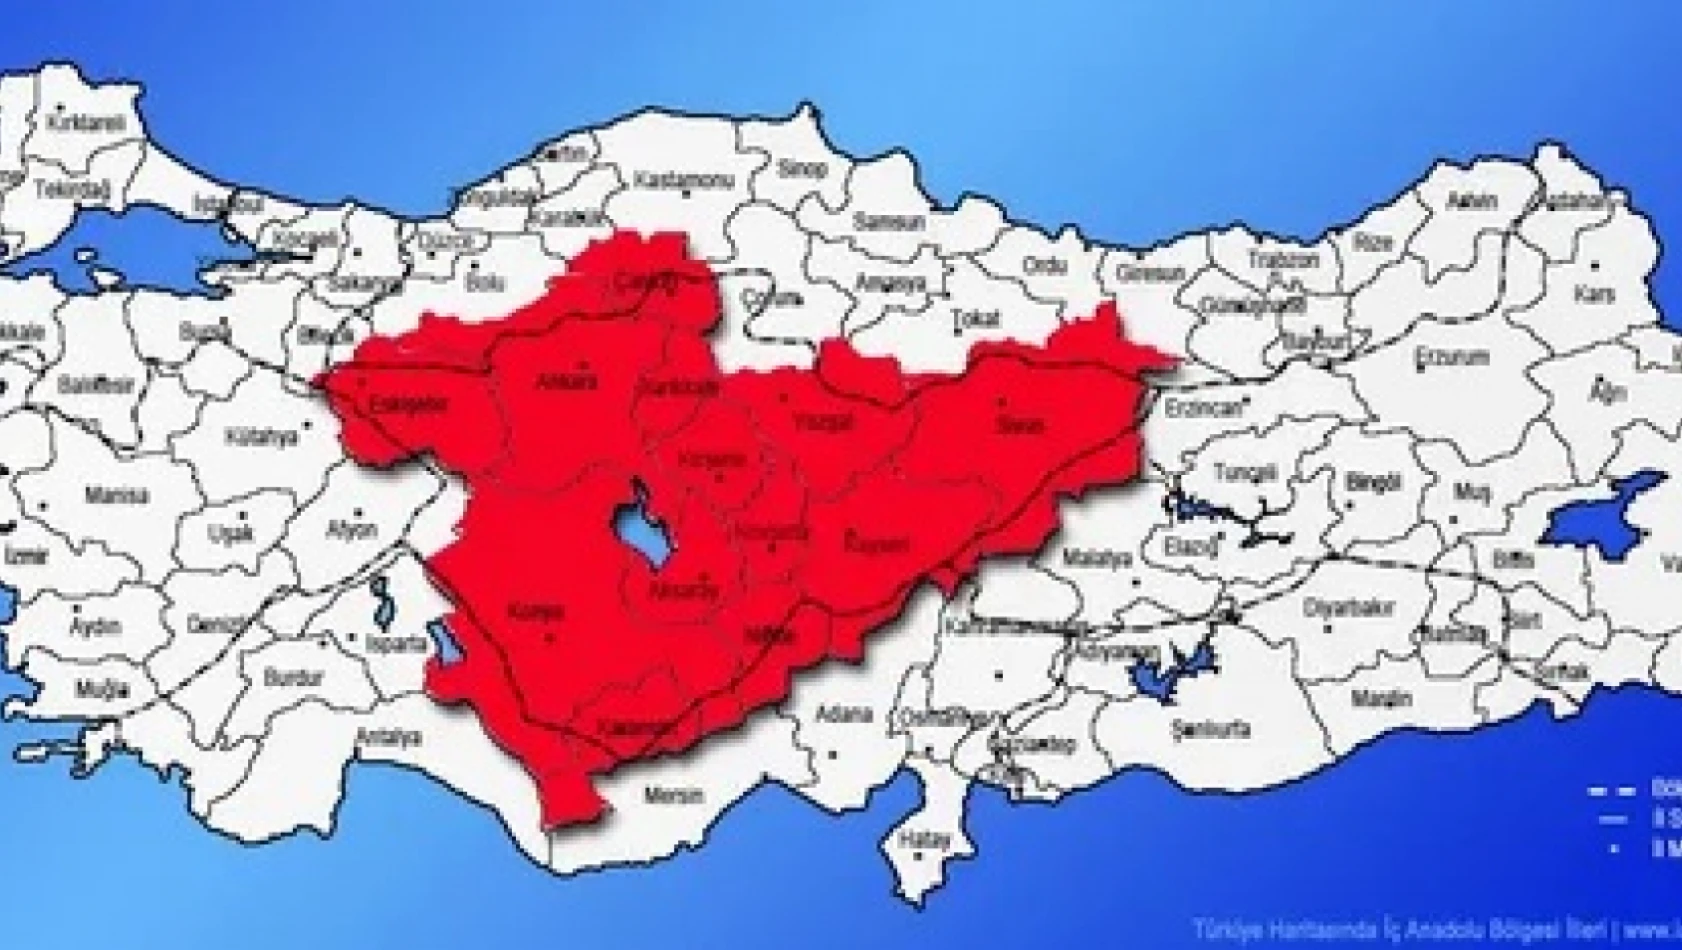 Nevşehir, Yozgat, Niğde, Kayseri önleminizi alın! İstilacı hayvan çoğalıyor!